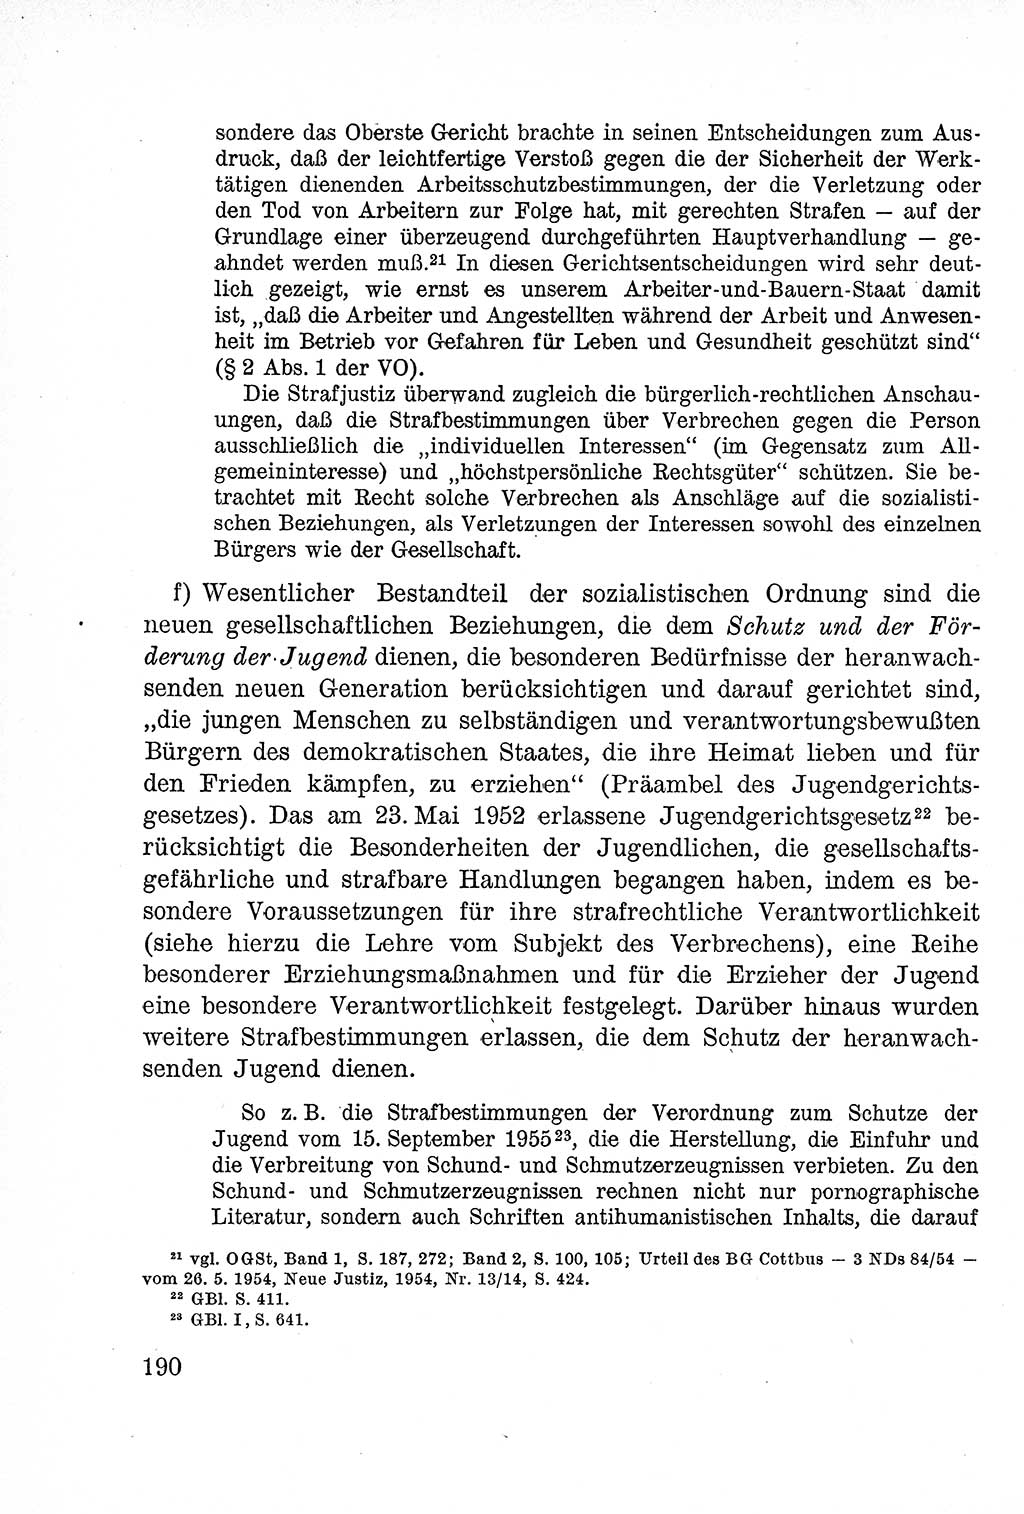 Lehrbuch des Strafrechts der Deutschen Demokratischen Republik (DDR), Allgemeiner Teil 1957, Seite 190 (Lb. Strafr. DDR AT 1957, S. 190)